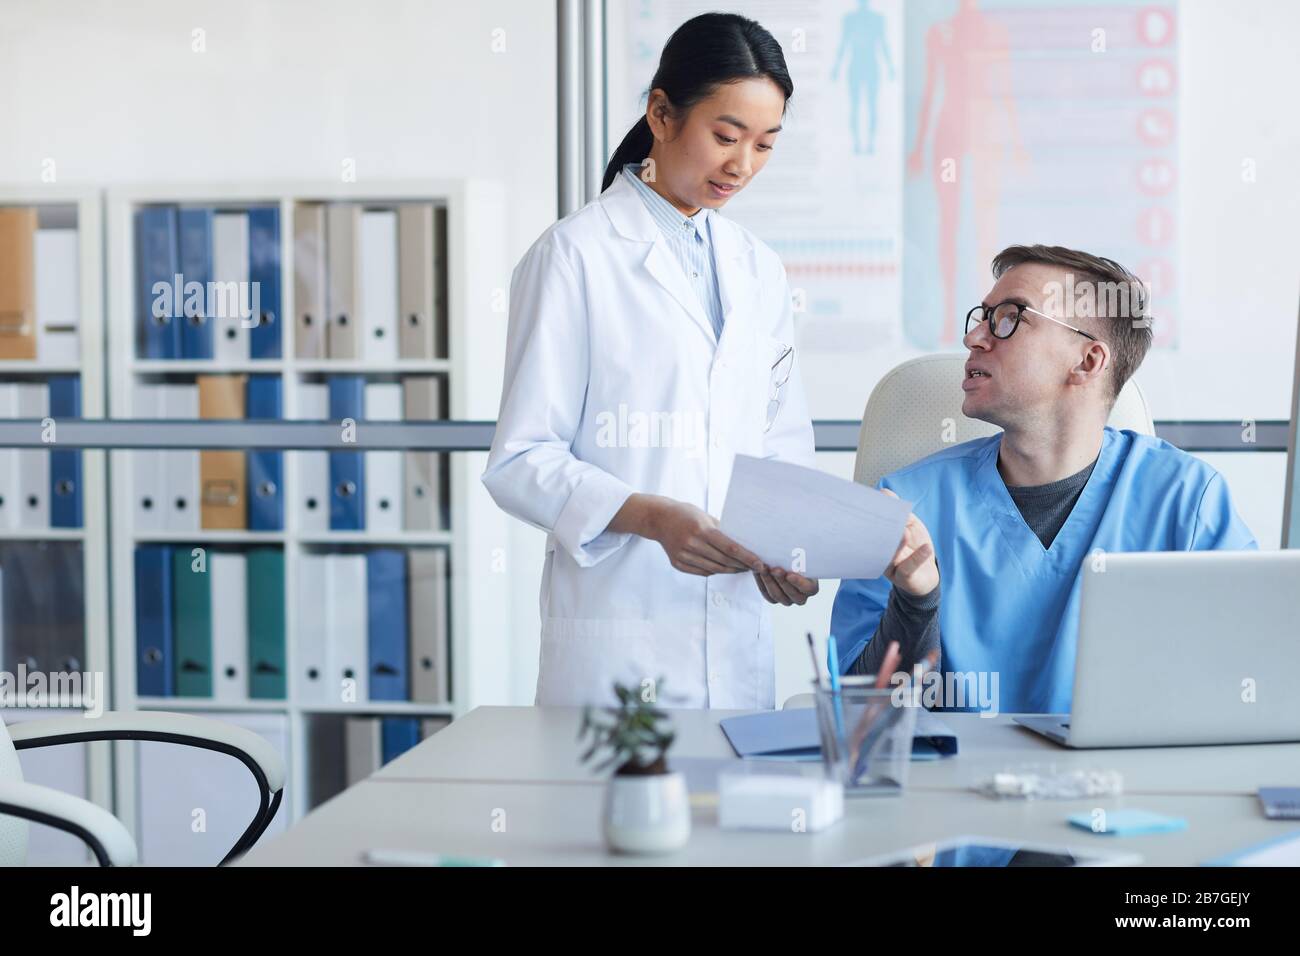 Ritratto di giovane medico asiatico consulente supervisore durante internship in clinica, copia spazio Foto Stock